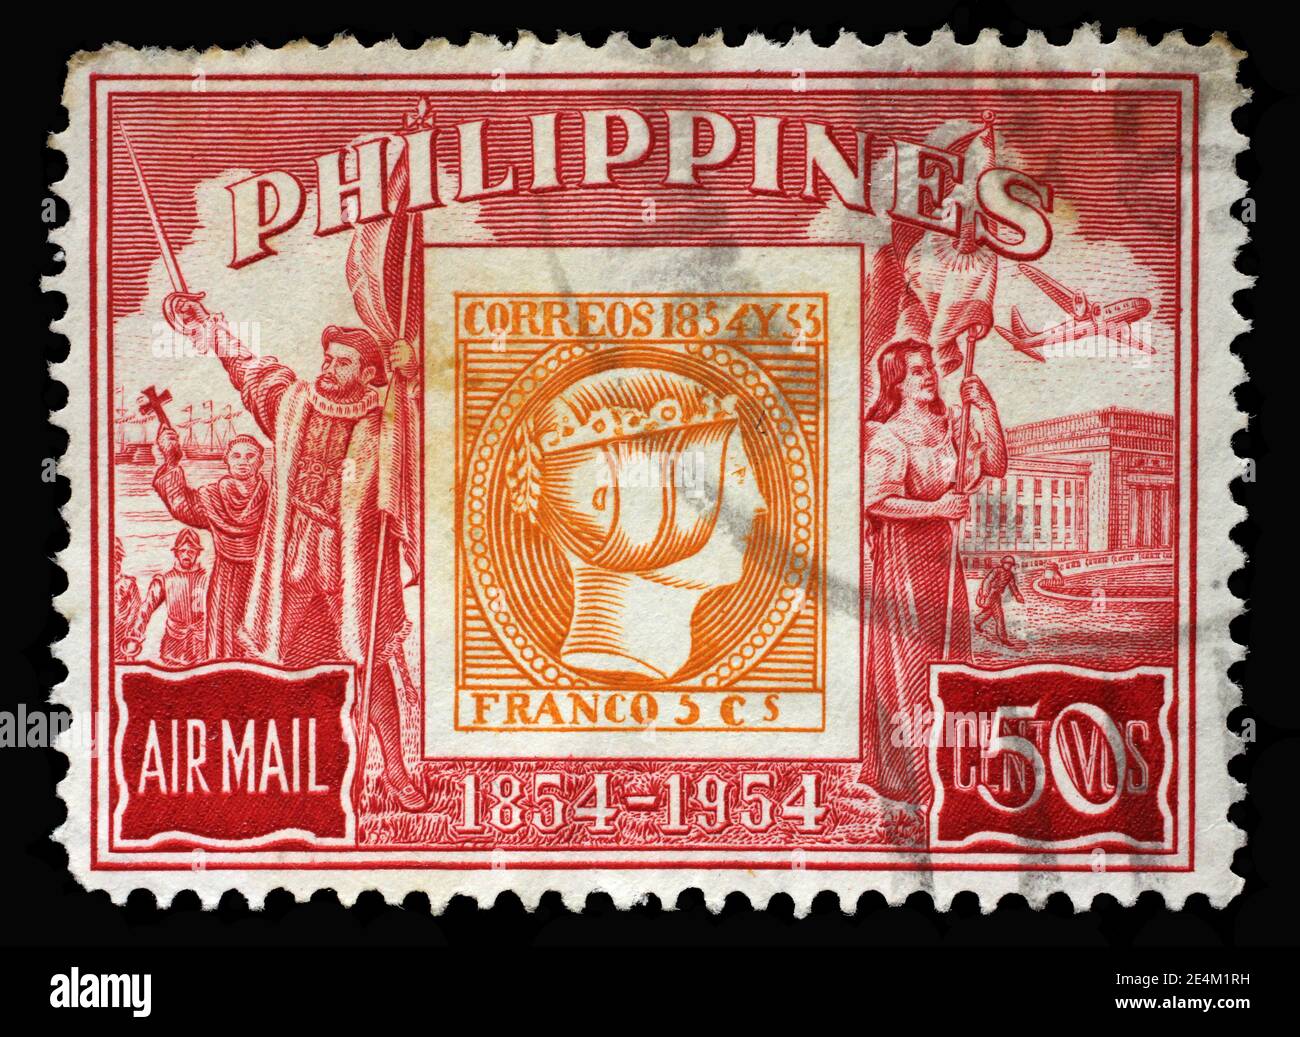 Timbre imprimé aux Philippines émis à l'occasion du 100e anniversaire du timbre philippin, vers 1954 Banque D'Images